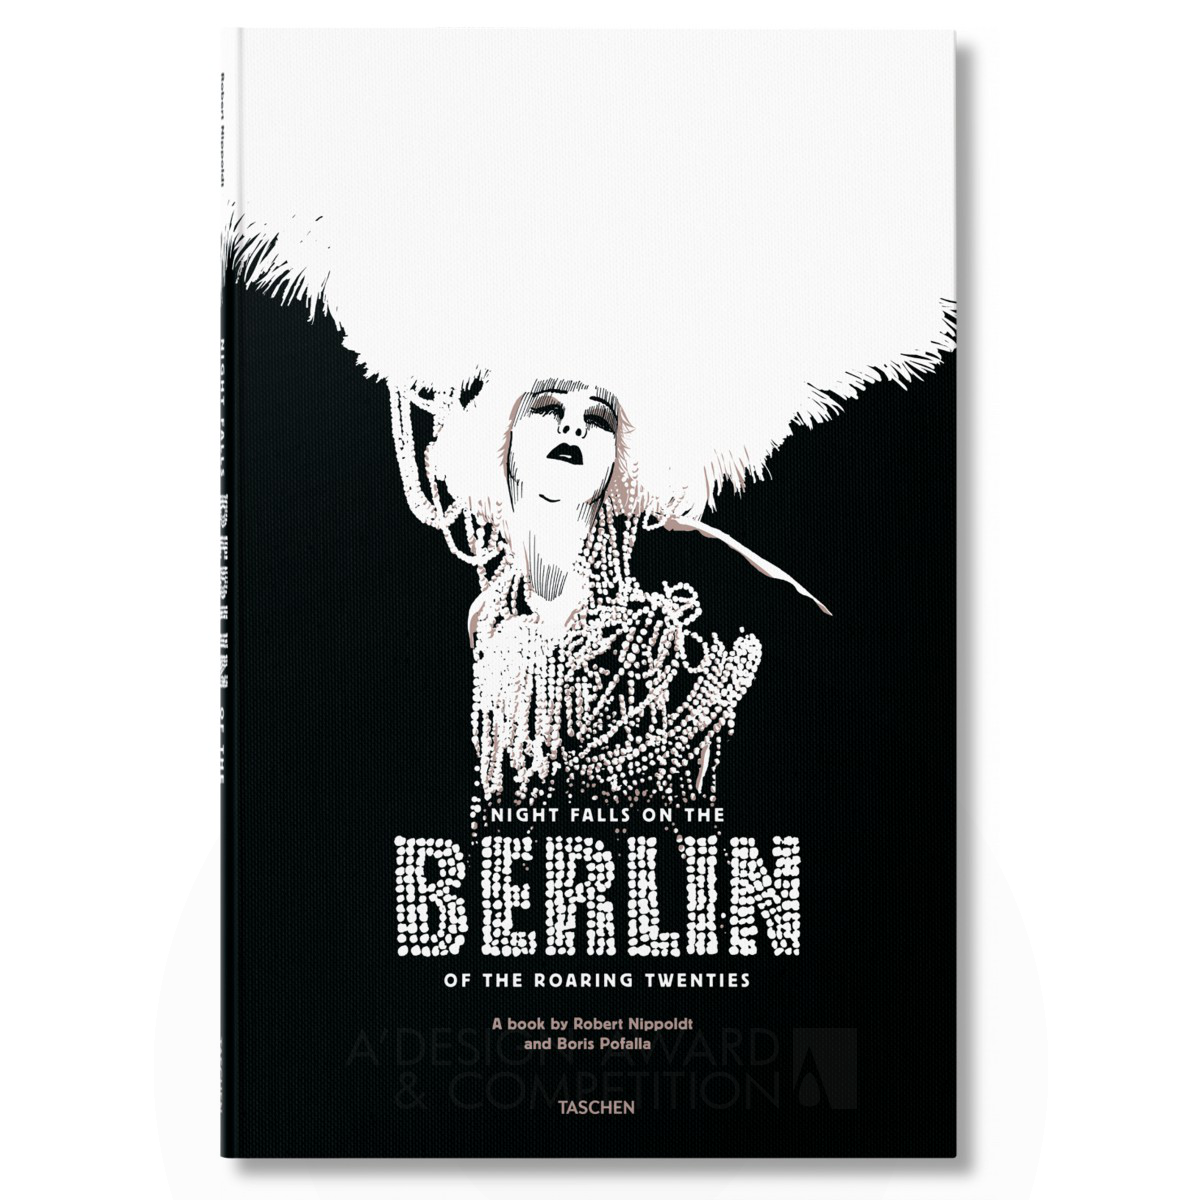 Berlin in the Twenties Book by Robert Nippoldt